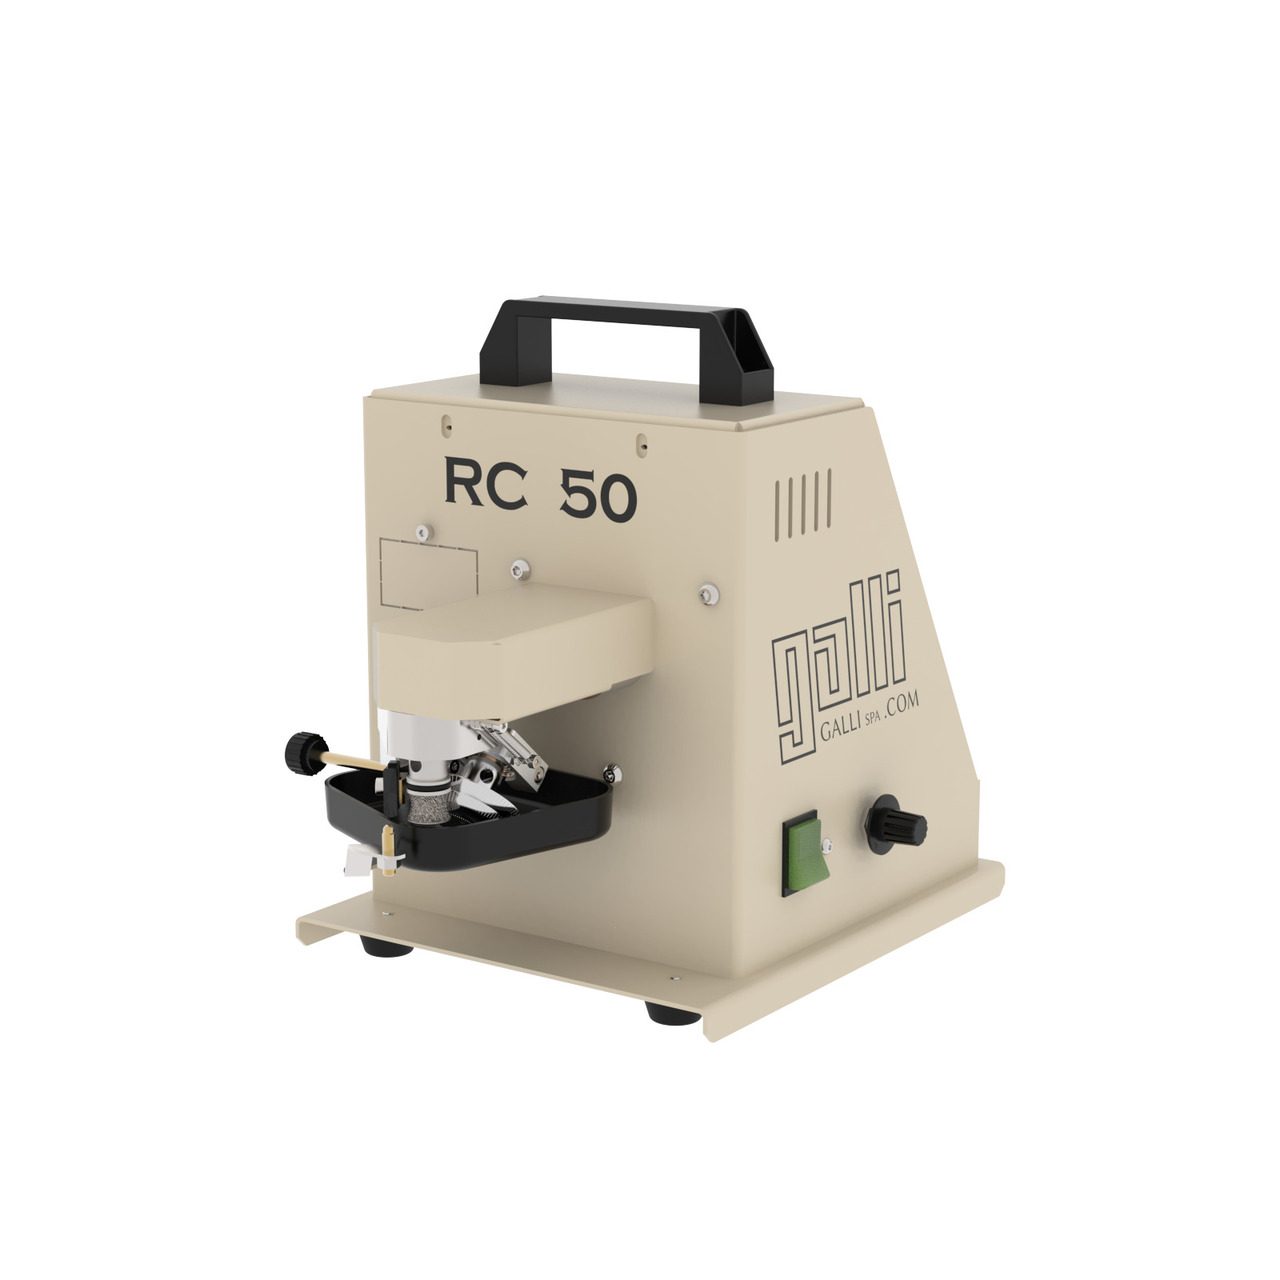 GALLI RC50 машина для нанесения краски на урезы кожи (ИТАЛИЯ)